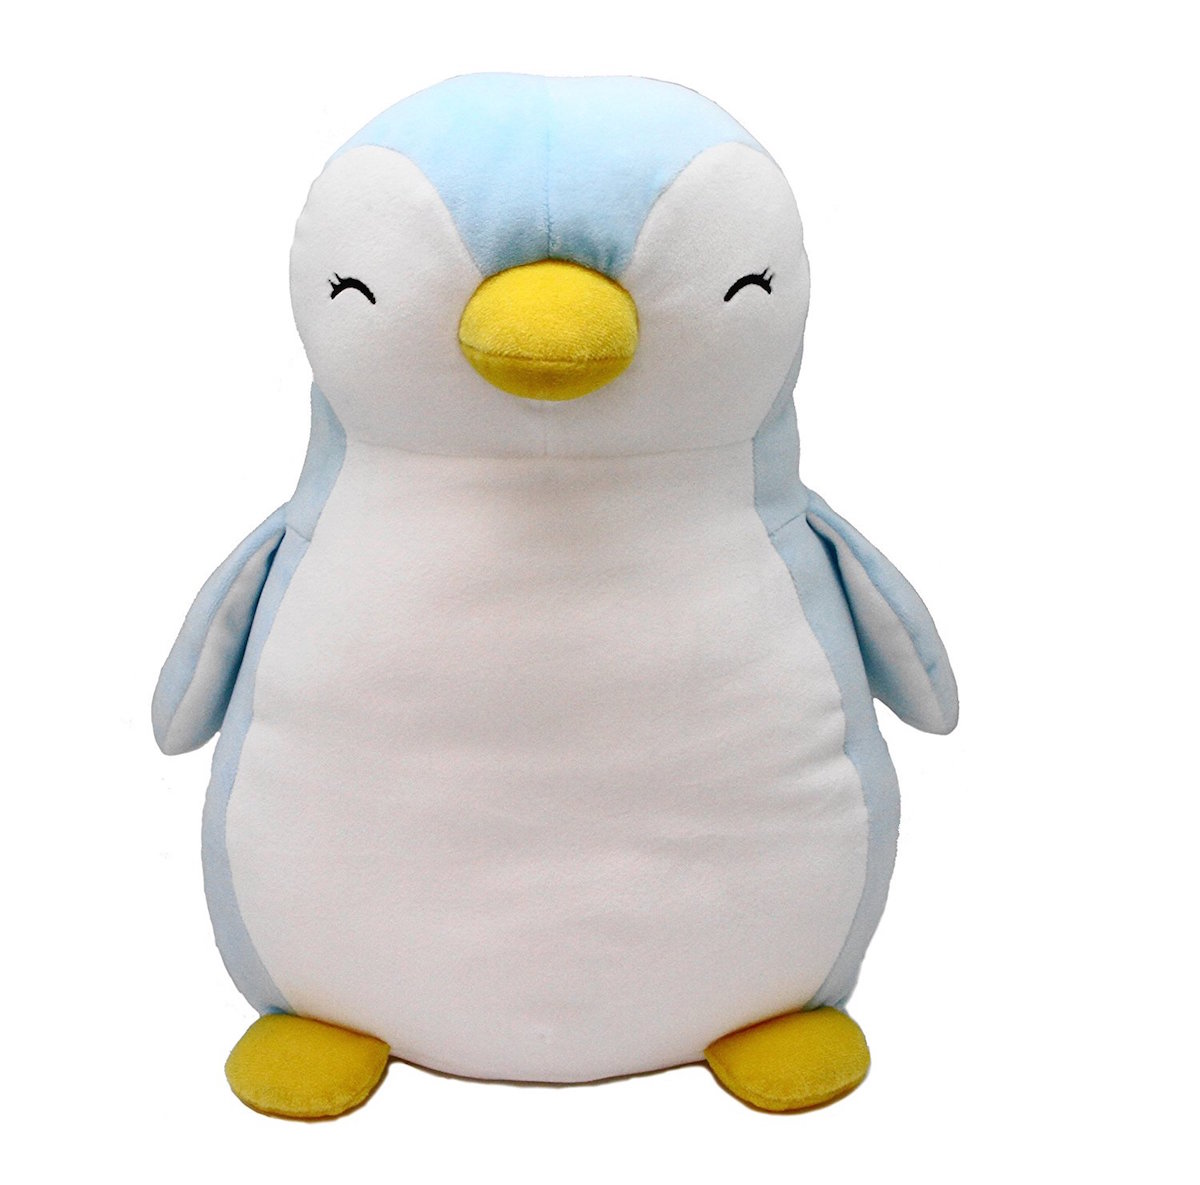 楽天市場 もちもちクッション ペンギン ぬいぐるみ クッション オーロラワールド Aurora World 海の生き物 Sanwaショップ